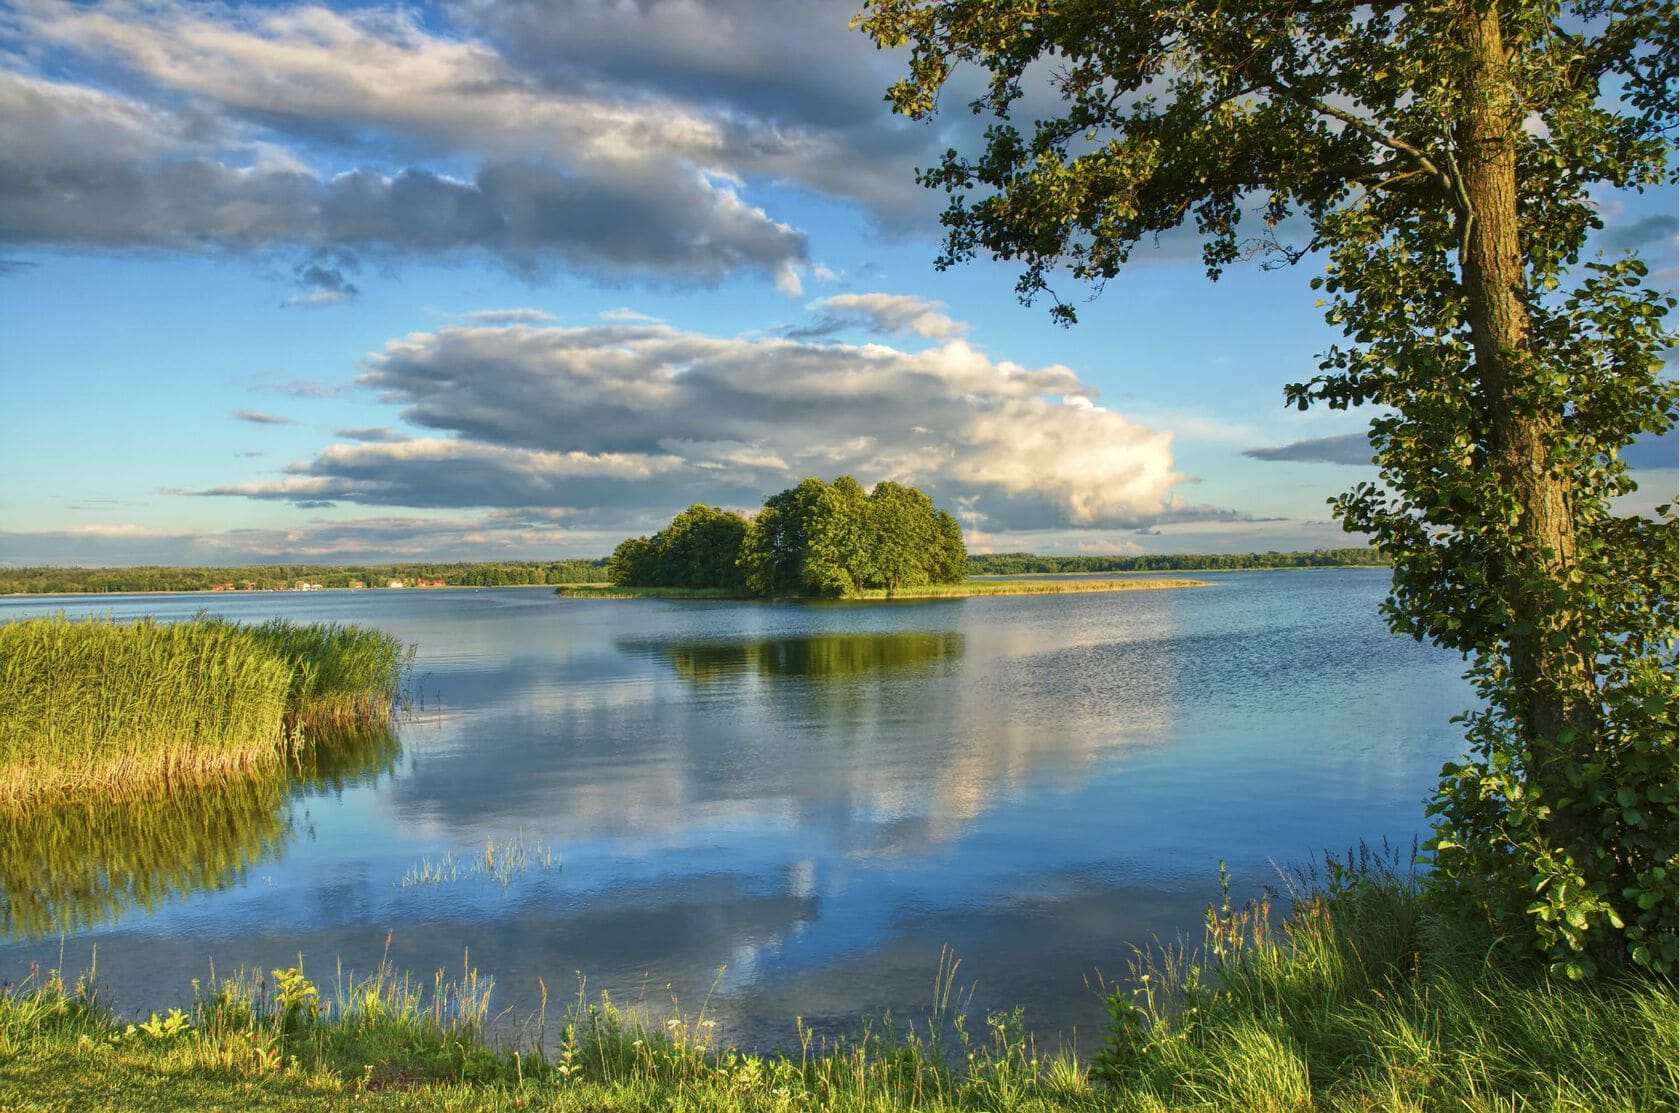 Smuk sø omgivet af grønne træer og eng. Den blå himmel spejler sig i søen.